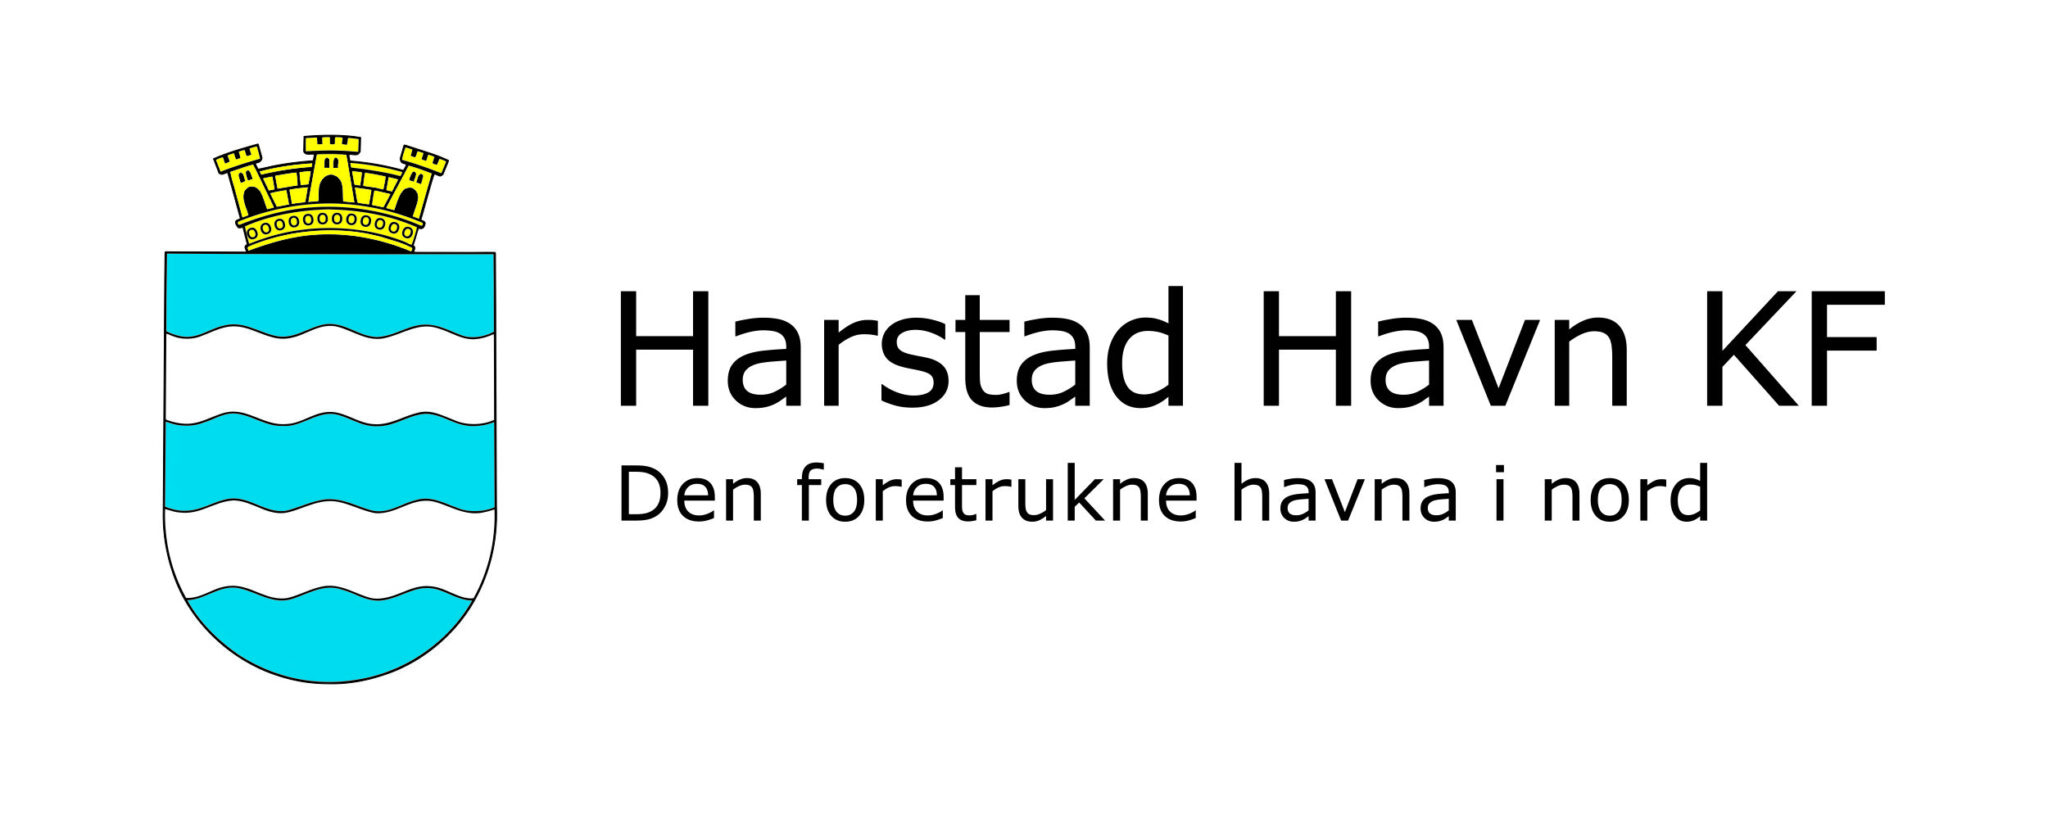 Harstad havn